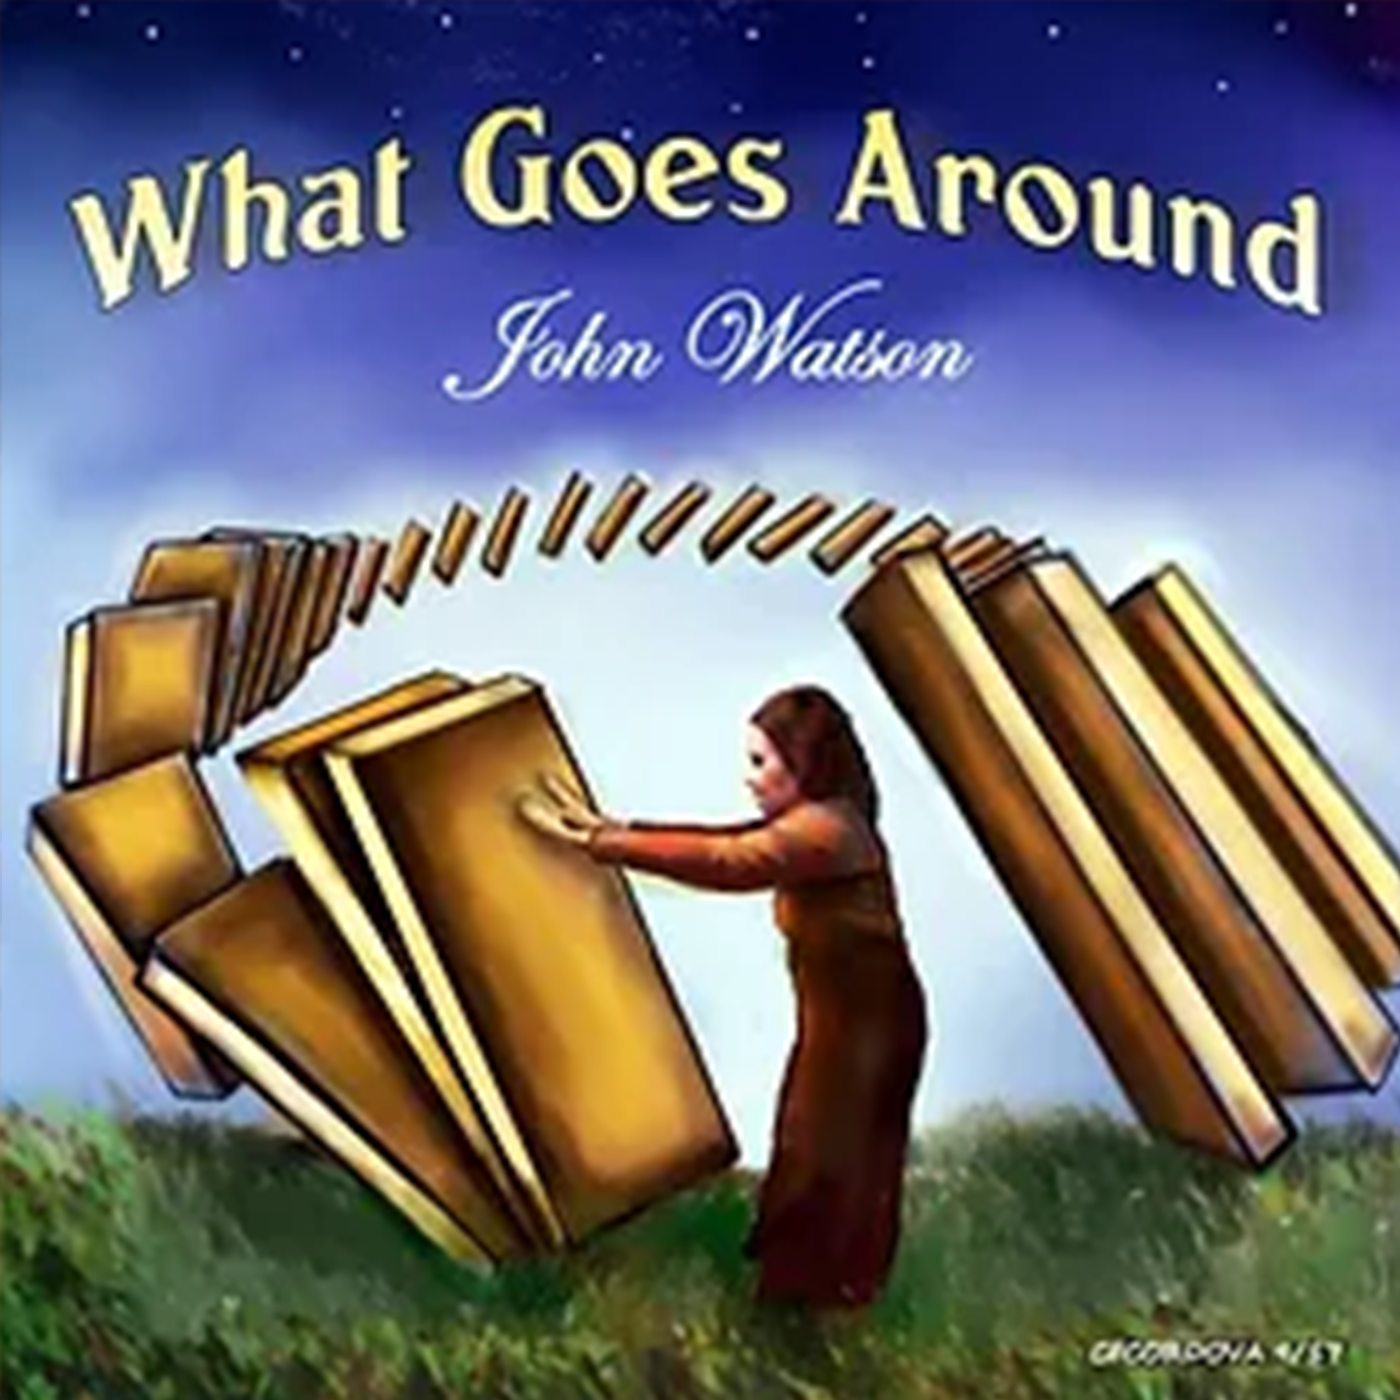 What Goes Around John Watson Album Cover